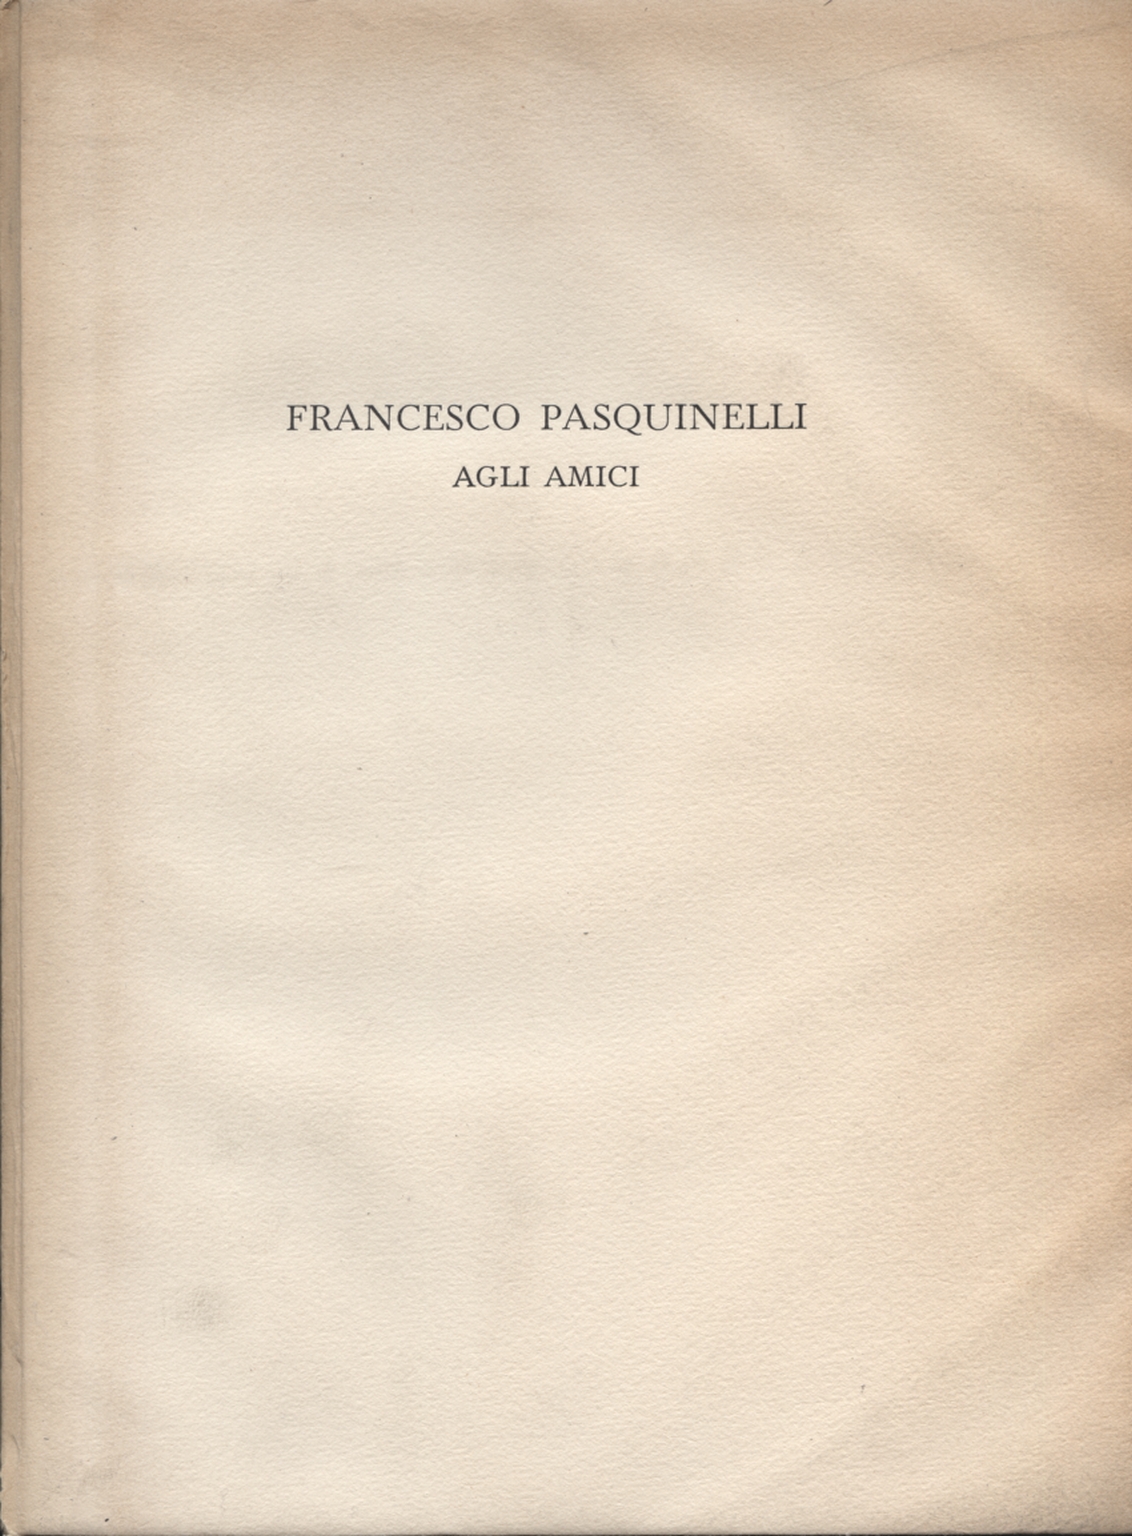 Francesco Pasquinelli freunde, Francesco Pasquinelli